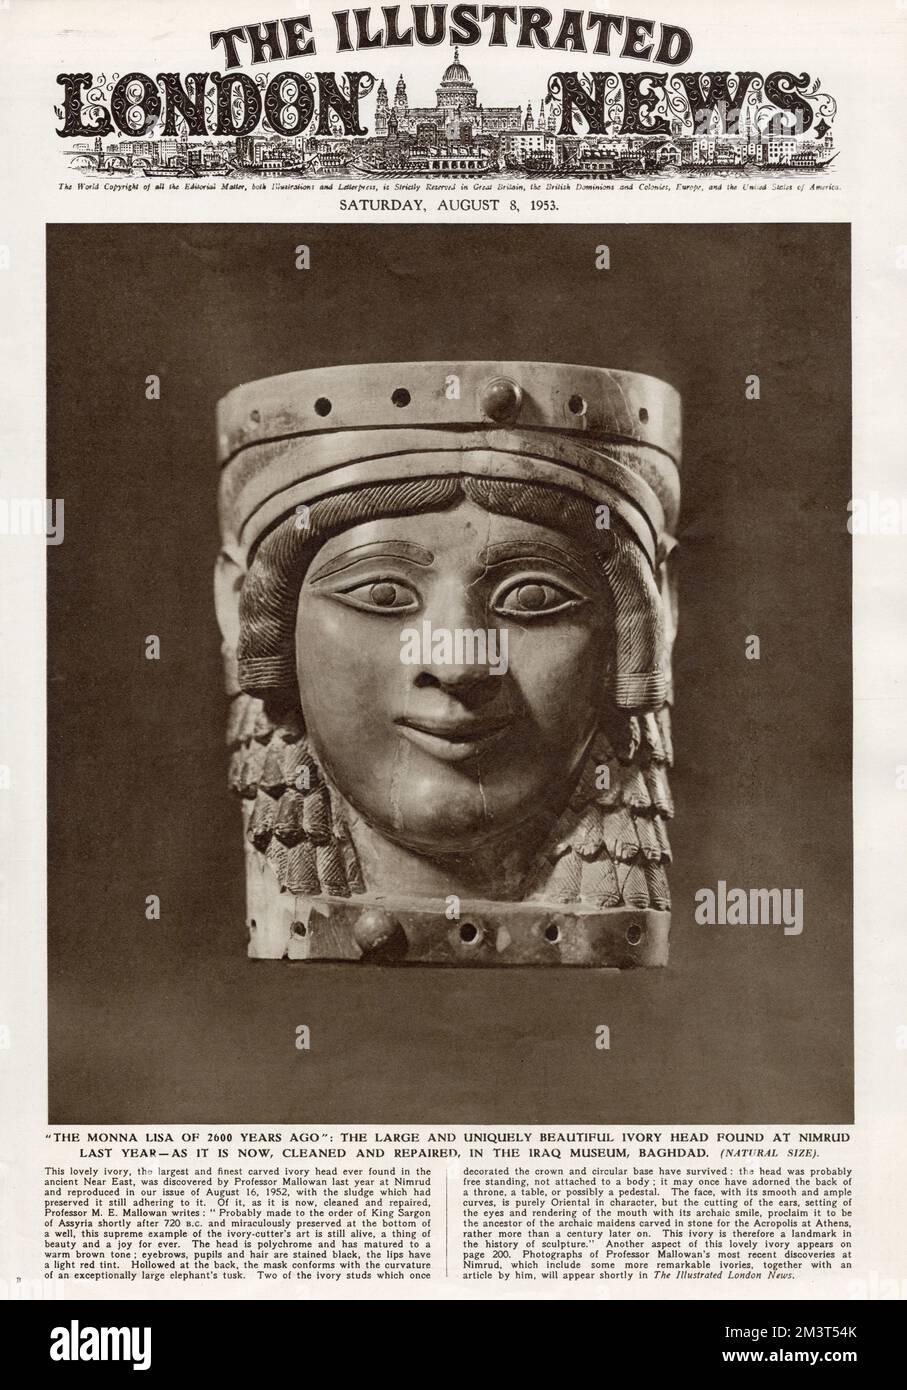 Der große und wunderschöne Elfenbeinkopf, den Professor Mallowan 1952 in Nimrud fand, wie gereinigt und repariert, im Irak-Museum in Bagdad. Titelseite der illustrierten London News, 8. August 1953. Stockfoto